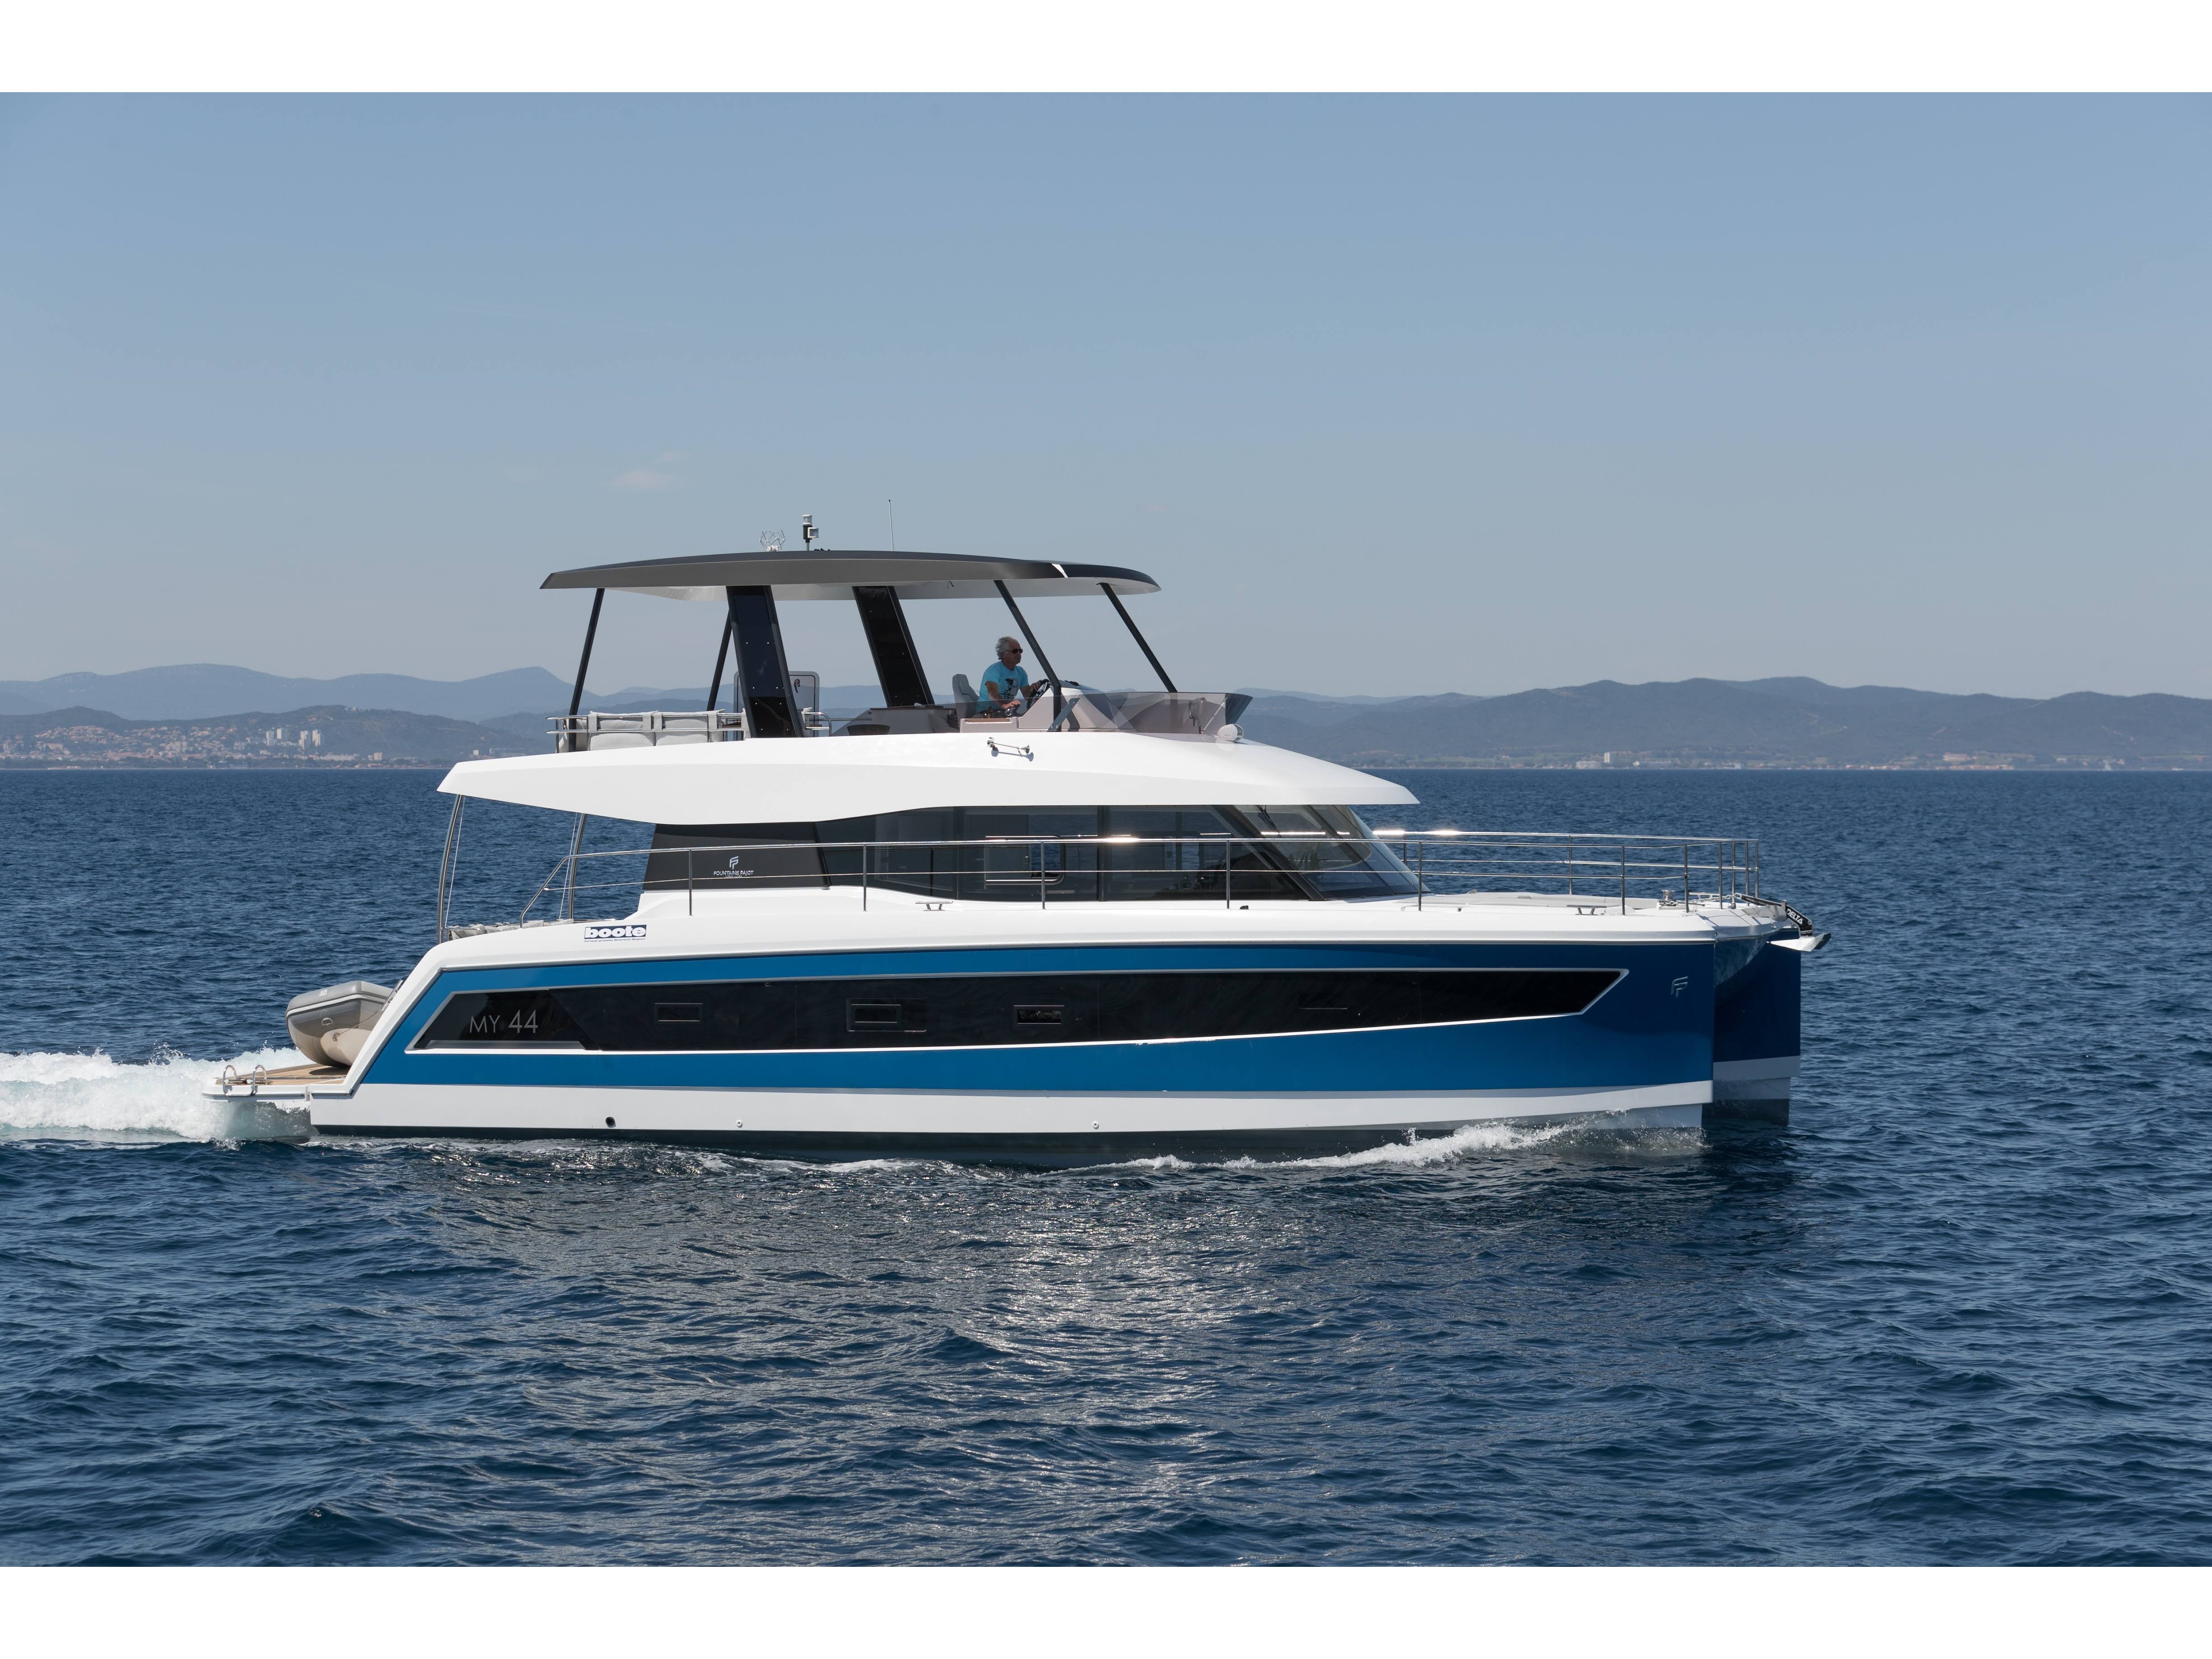 MY44 - Motor Boat Charter Greece & Boat hire in Greece Cyclades Islands Mykonos Mykonos 1